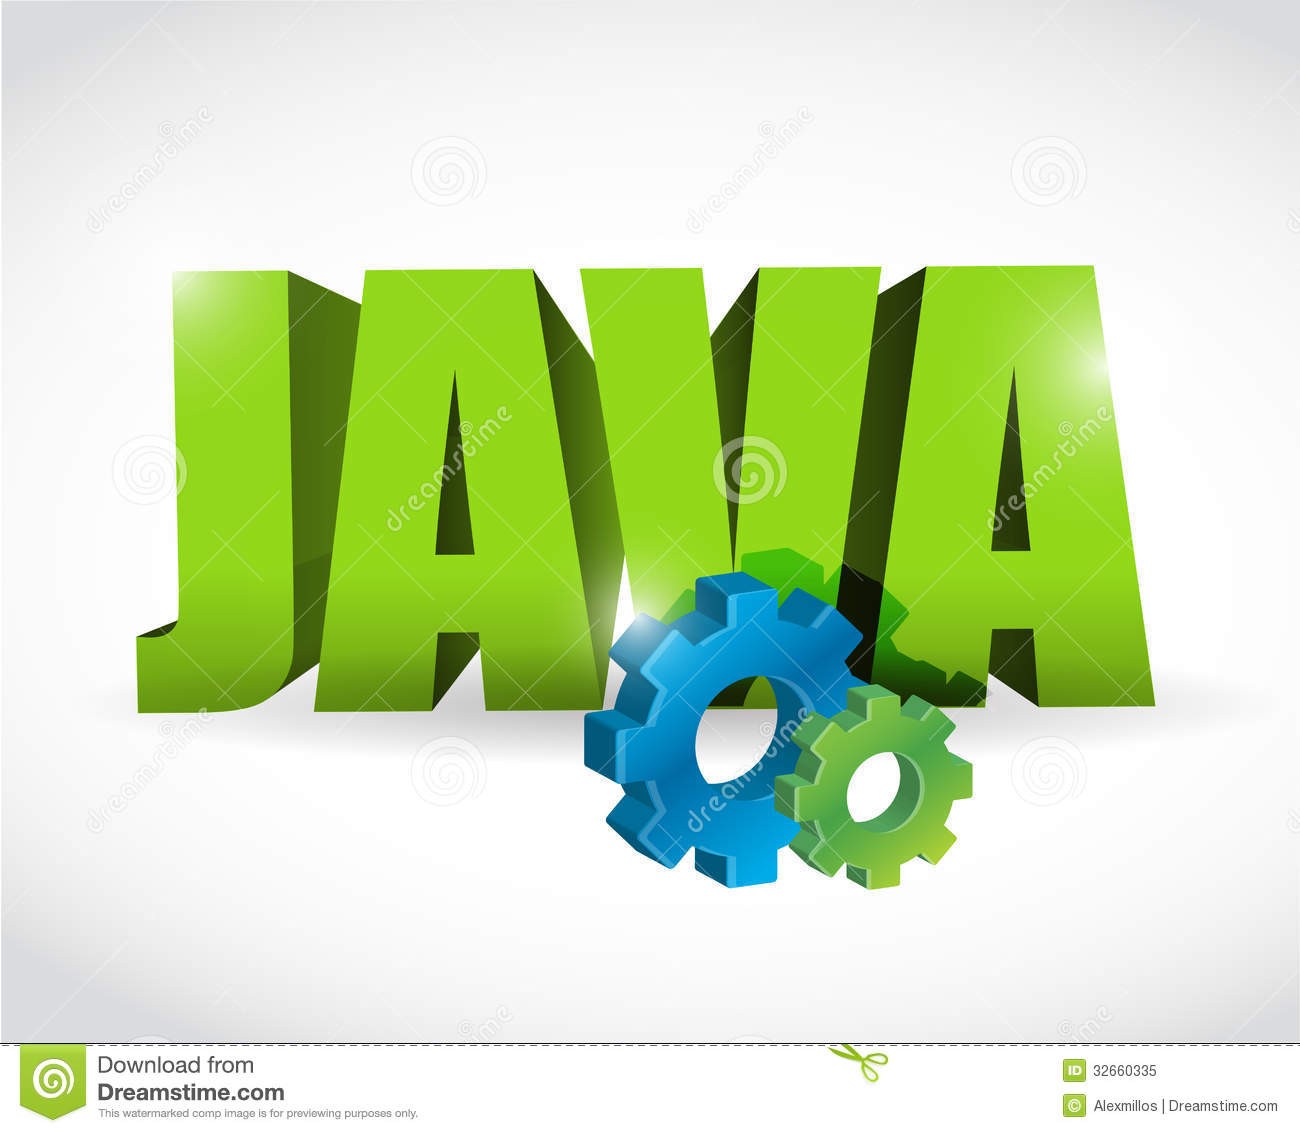 Java, Java android-ի խորացված դասընթացներ + 12 դաս անվճար անգլերենի դասընթաց նվեր